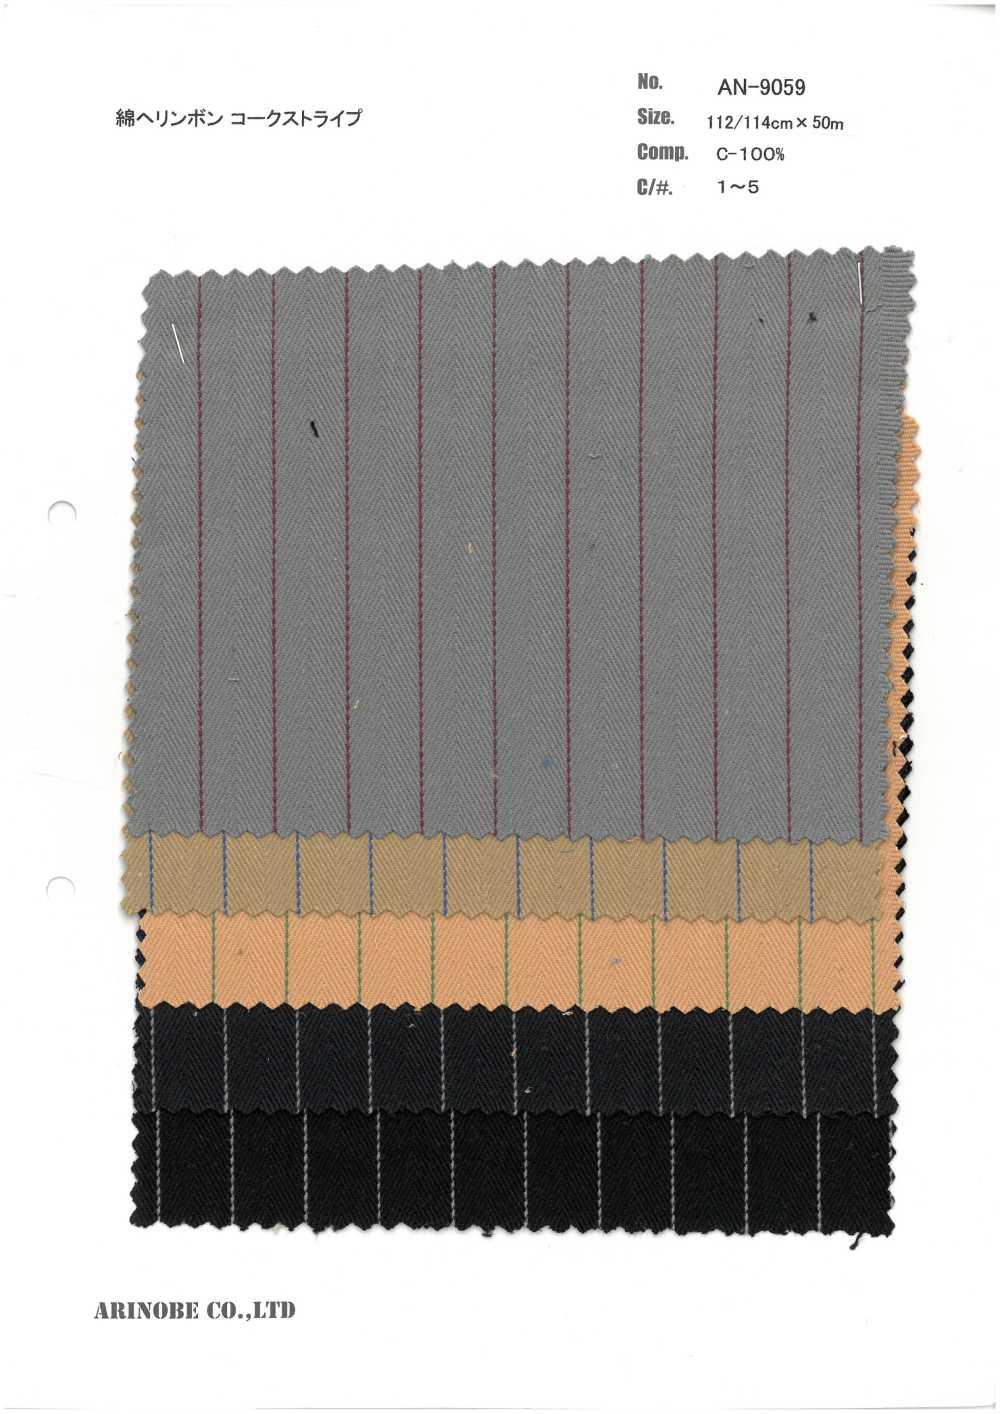 AN-9059 Listra De Cortiça Espinha De Peixe De Algodão[Têxtil / Tecido] ARINOBE CO., LTD.